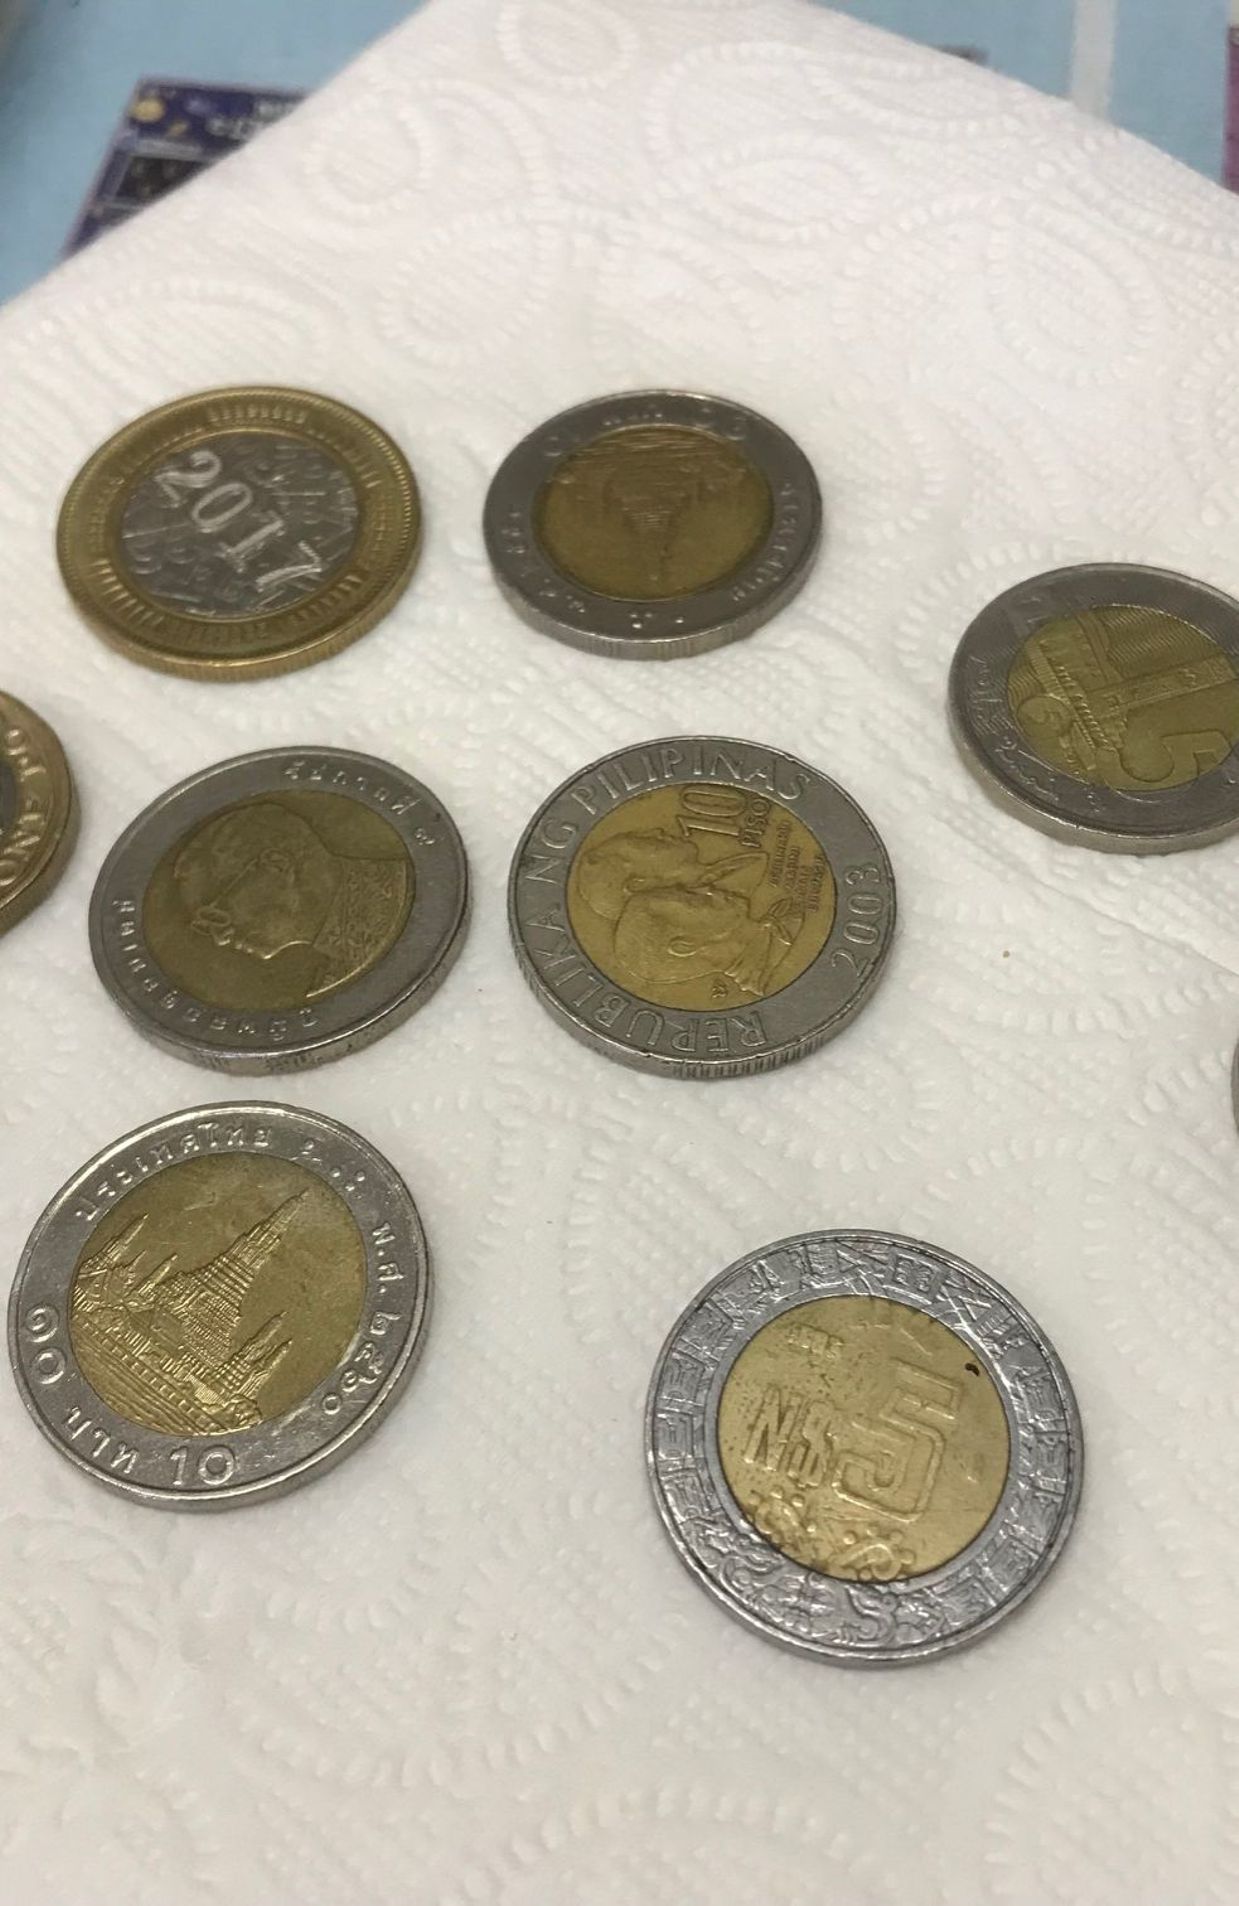 Fausse pièce de 2 euros de Turquie : comment la reconnaître ?